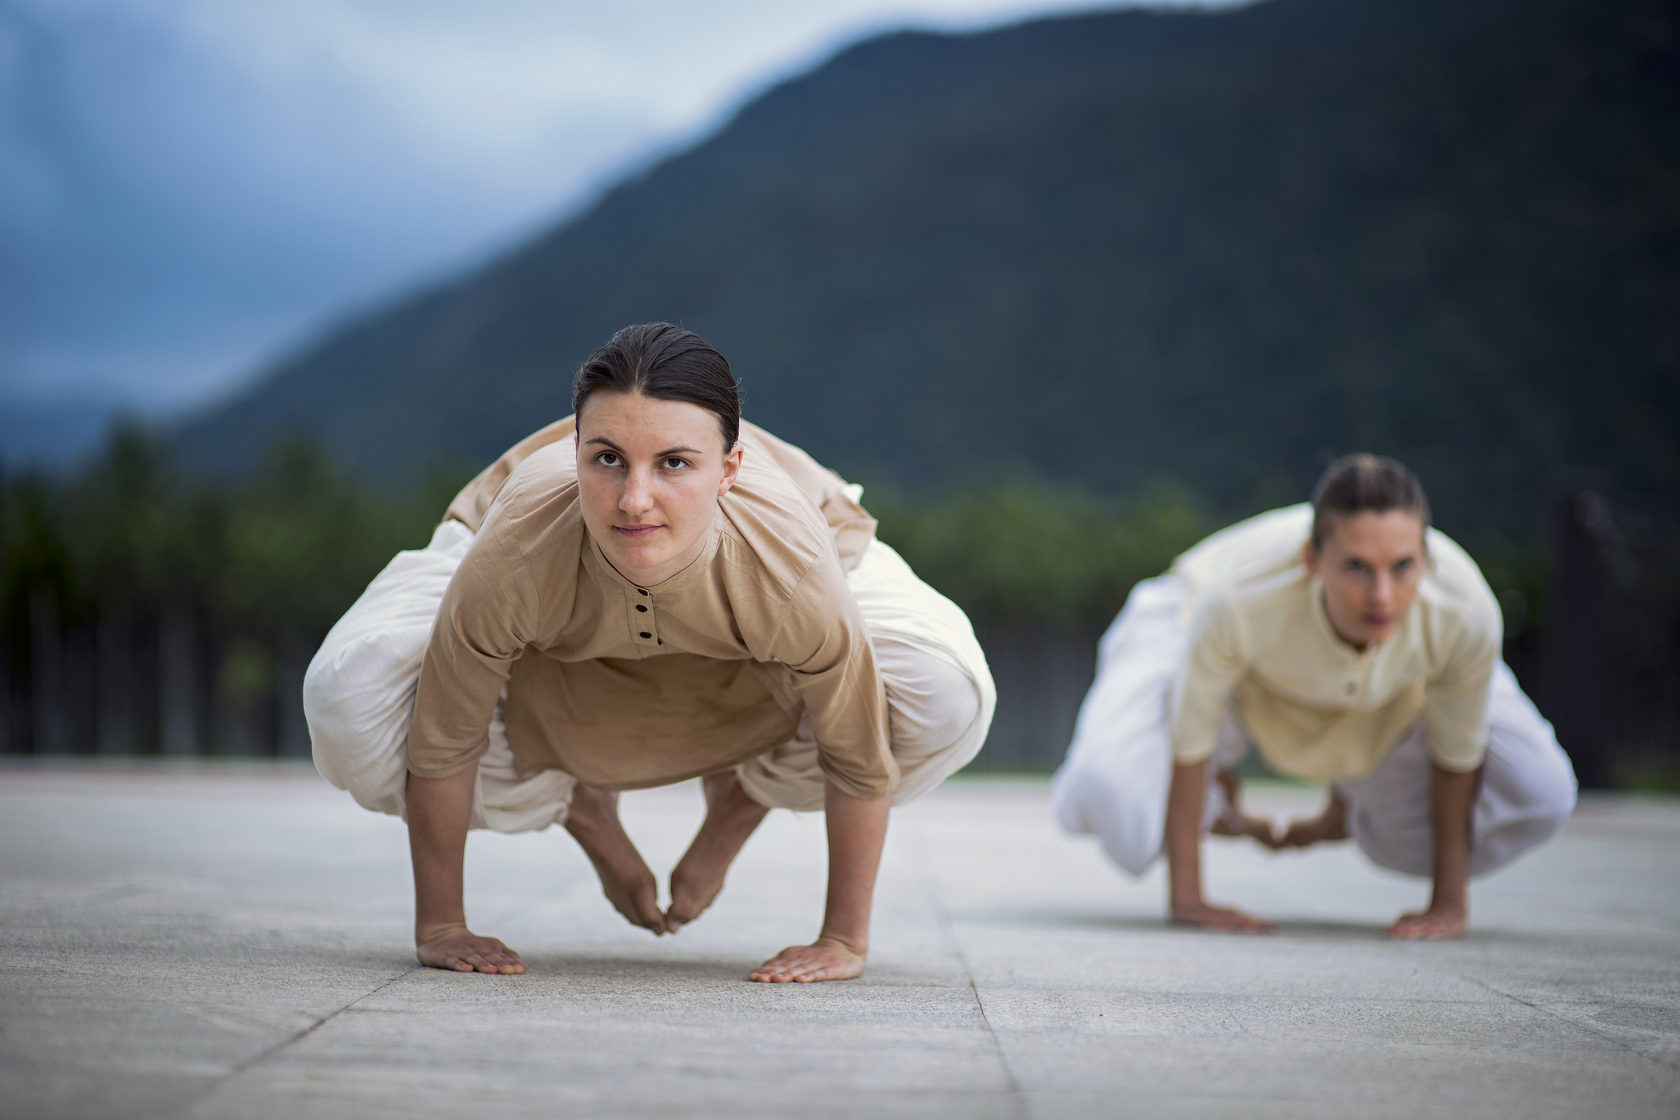 Boti Vagi on LinkedIn: New website and Isha Hatha Yoga workshops in august.  www.boti.yoga